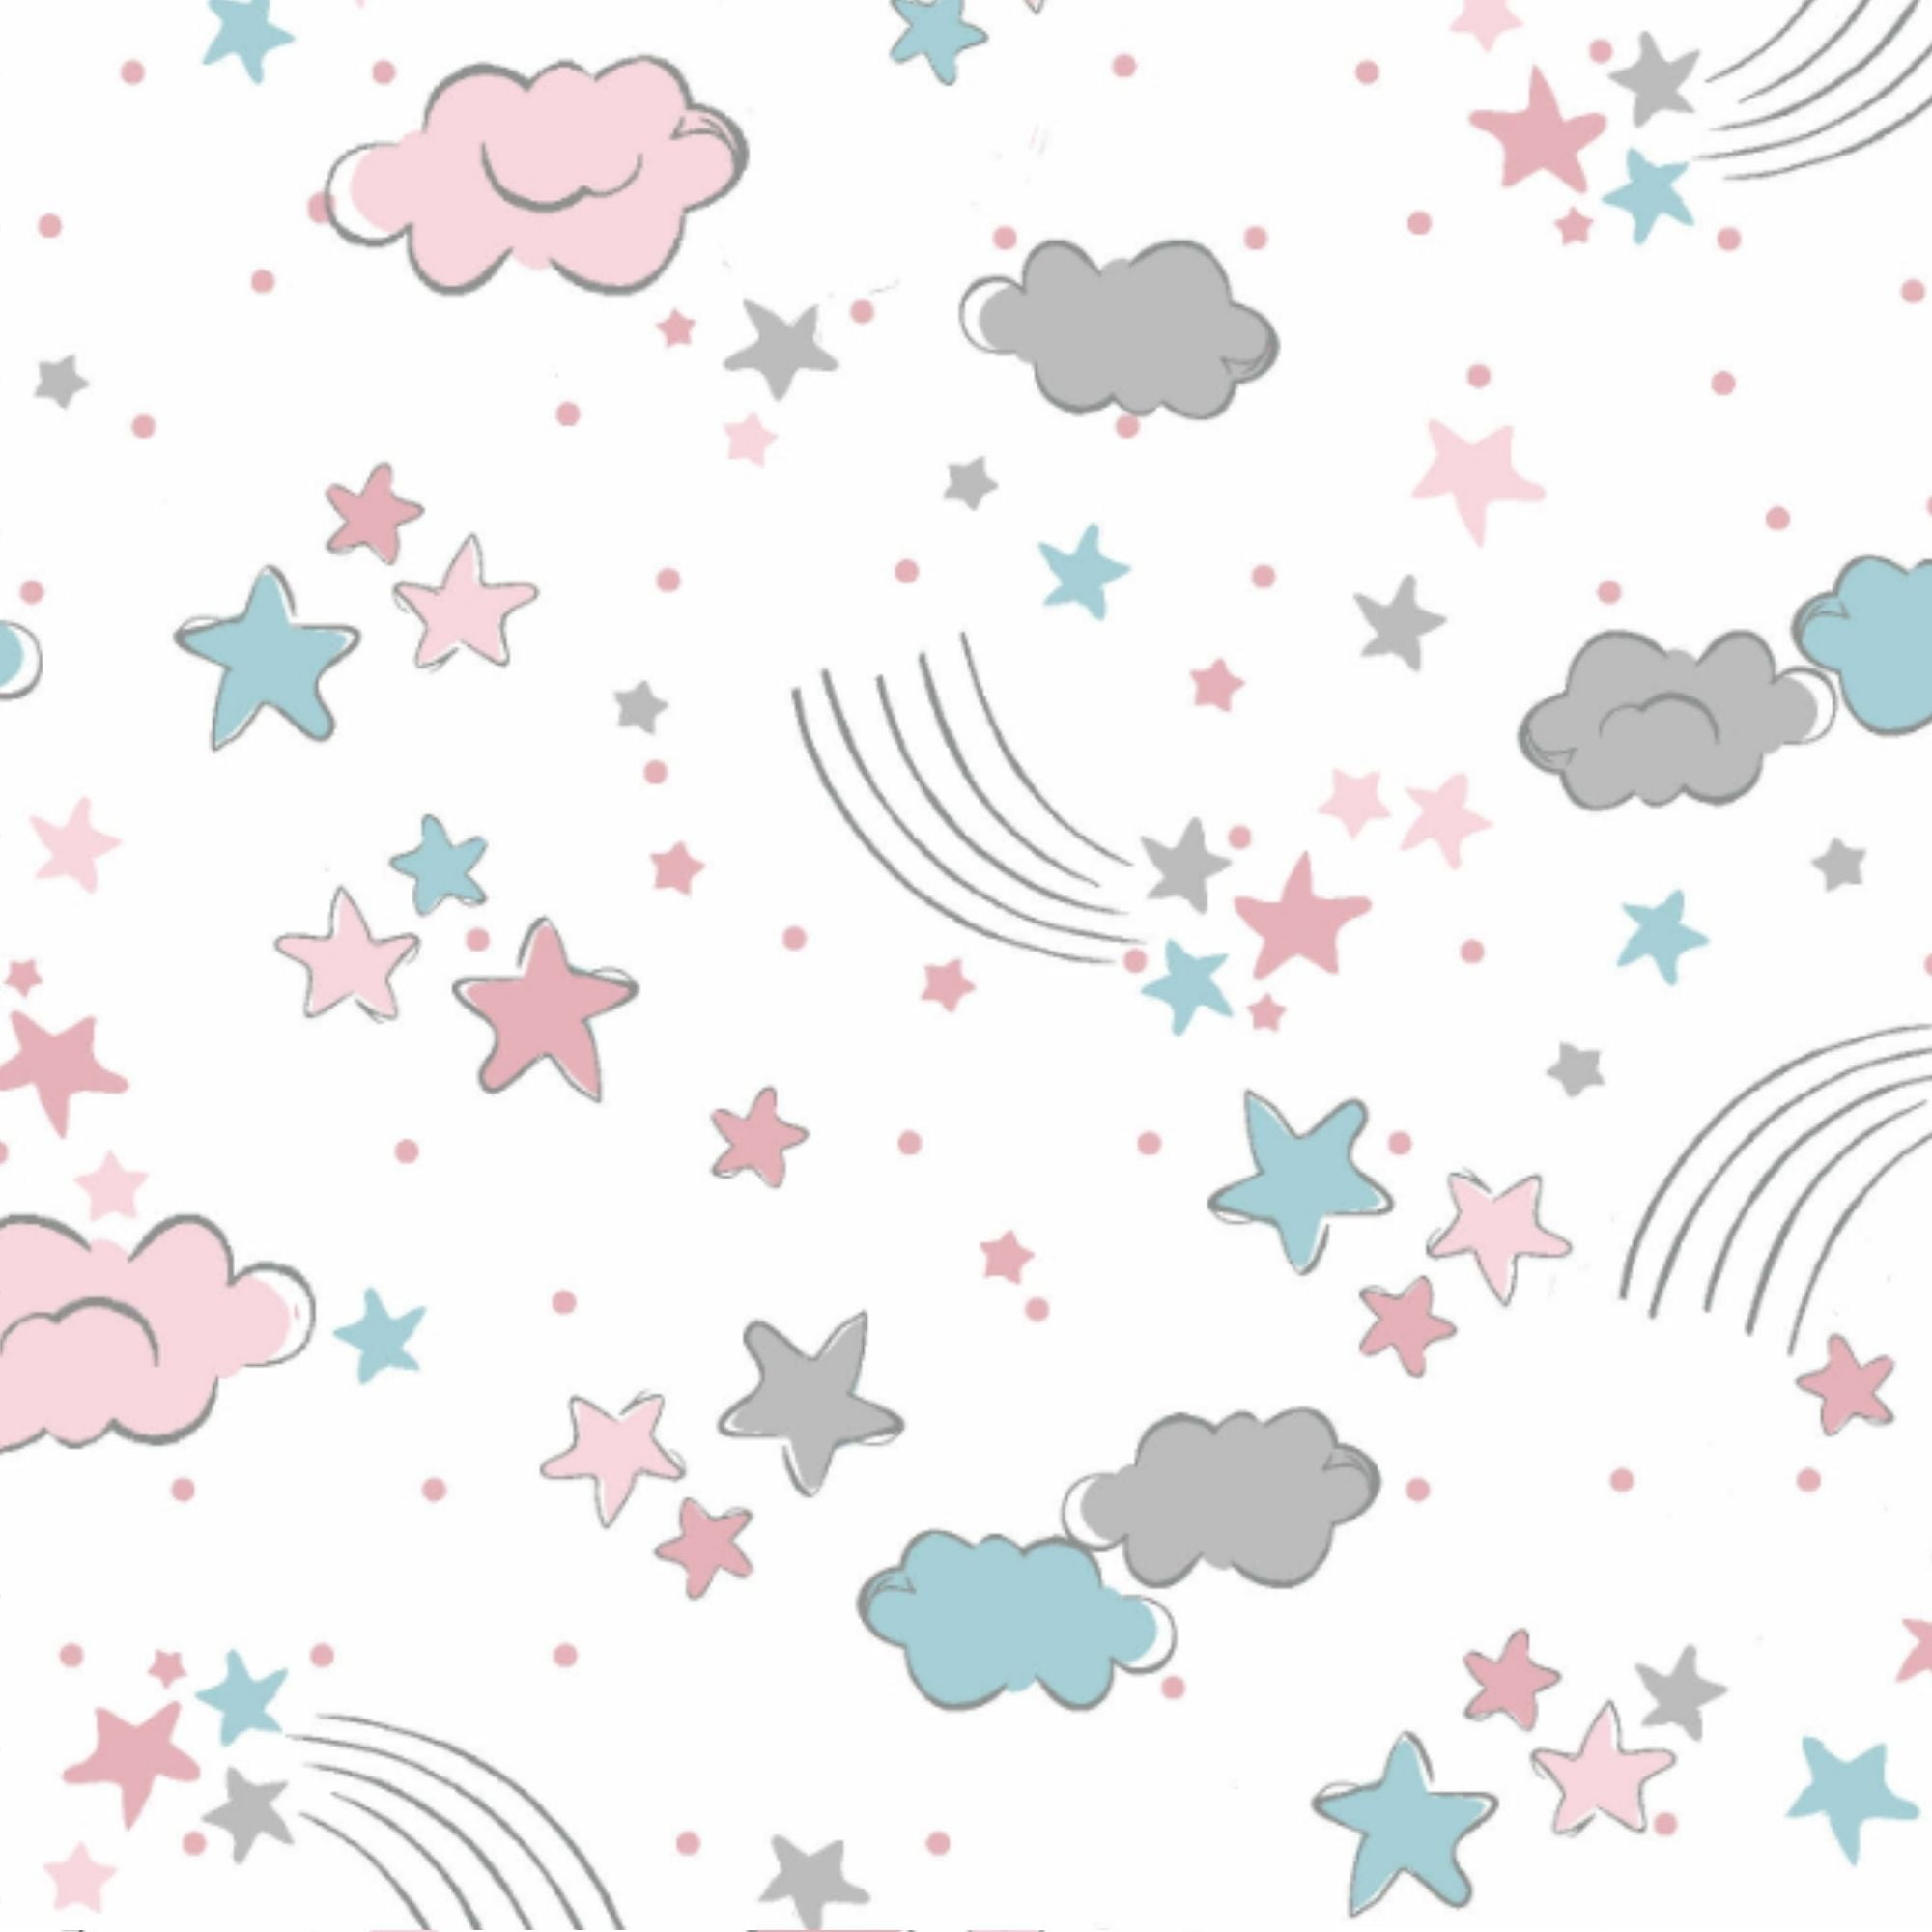 Tecido Tricoline Estrelas e Nuvens Rosa e Azul - Fundo Branco - Coleção Sonhos